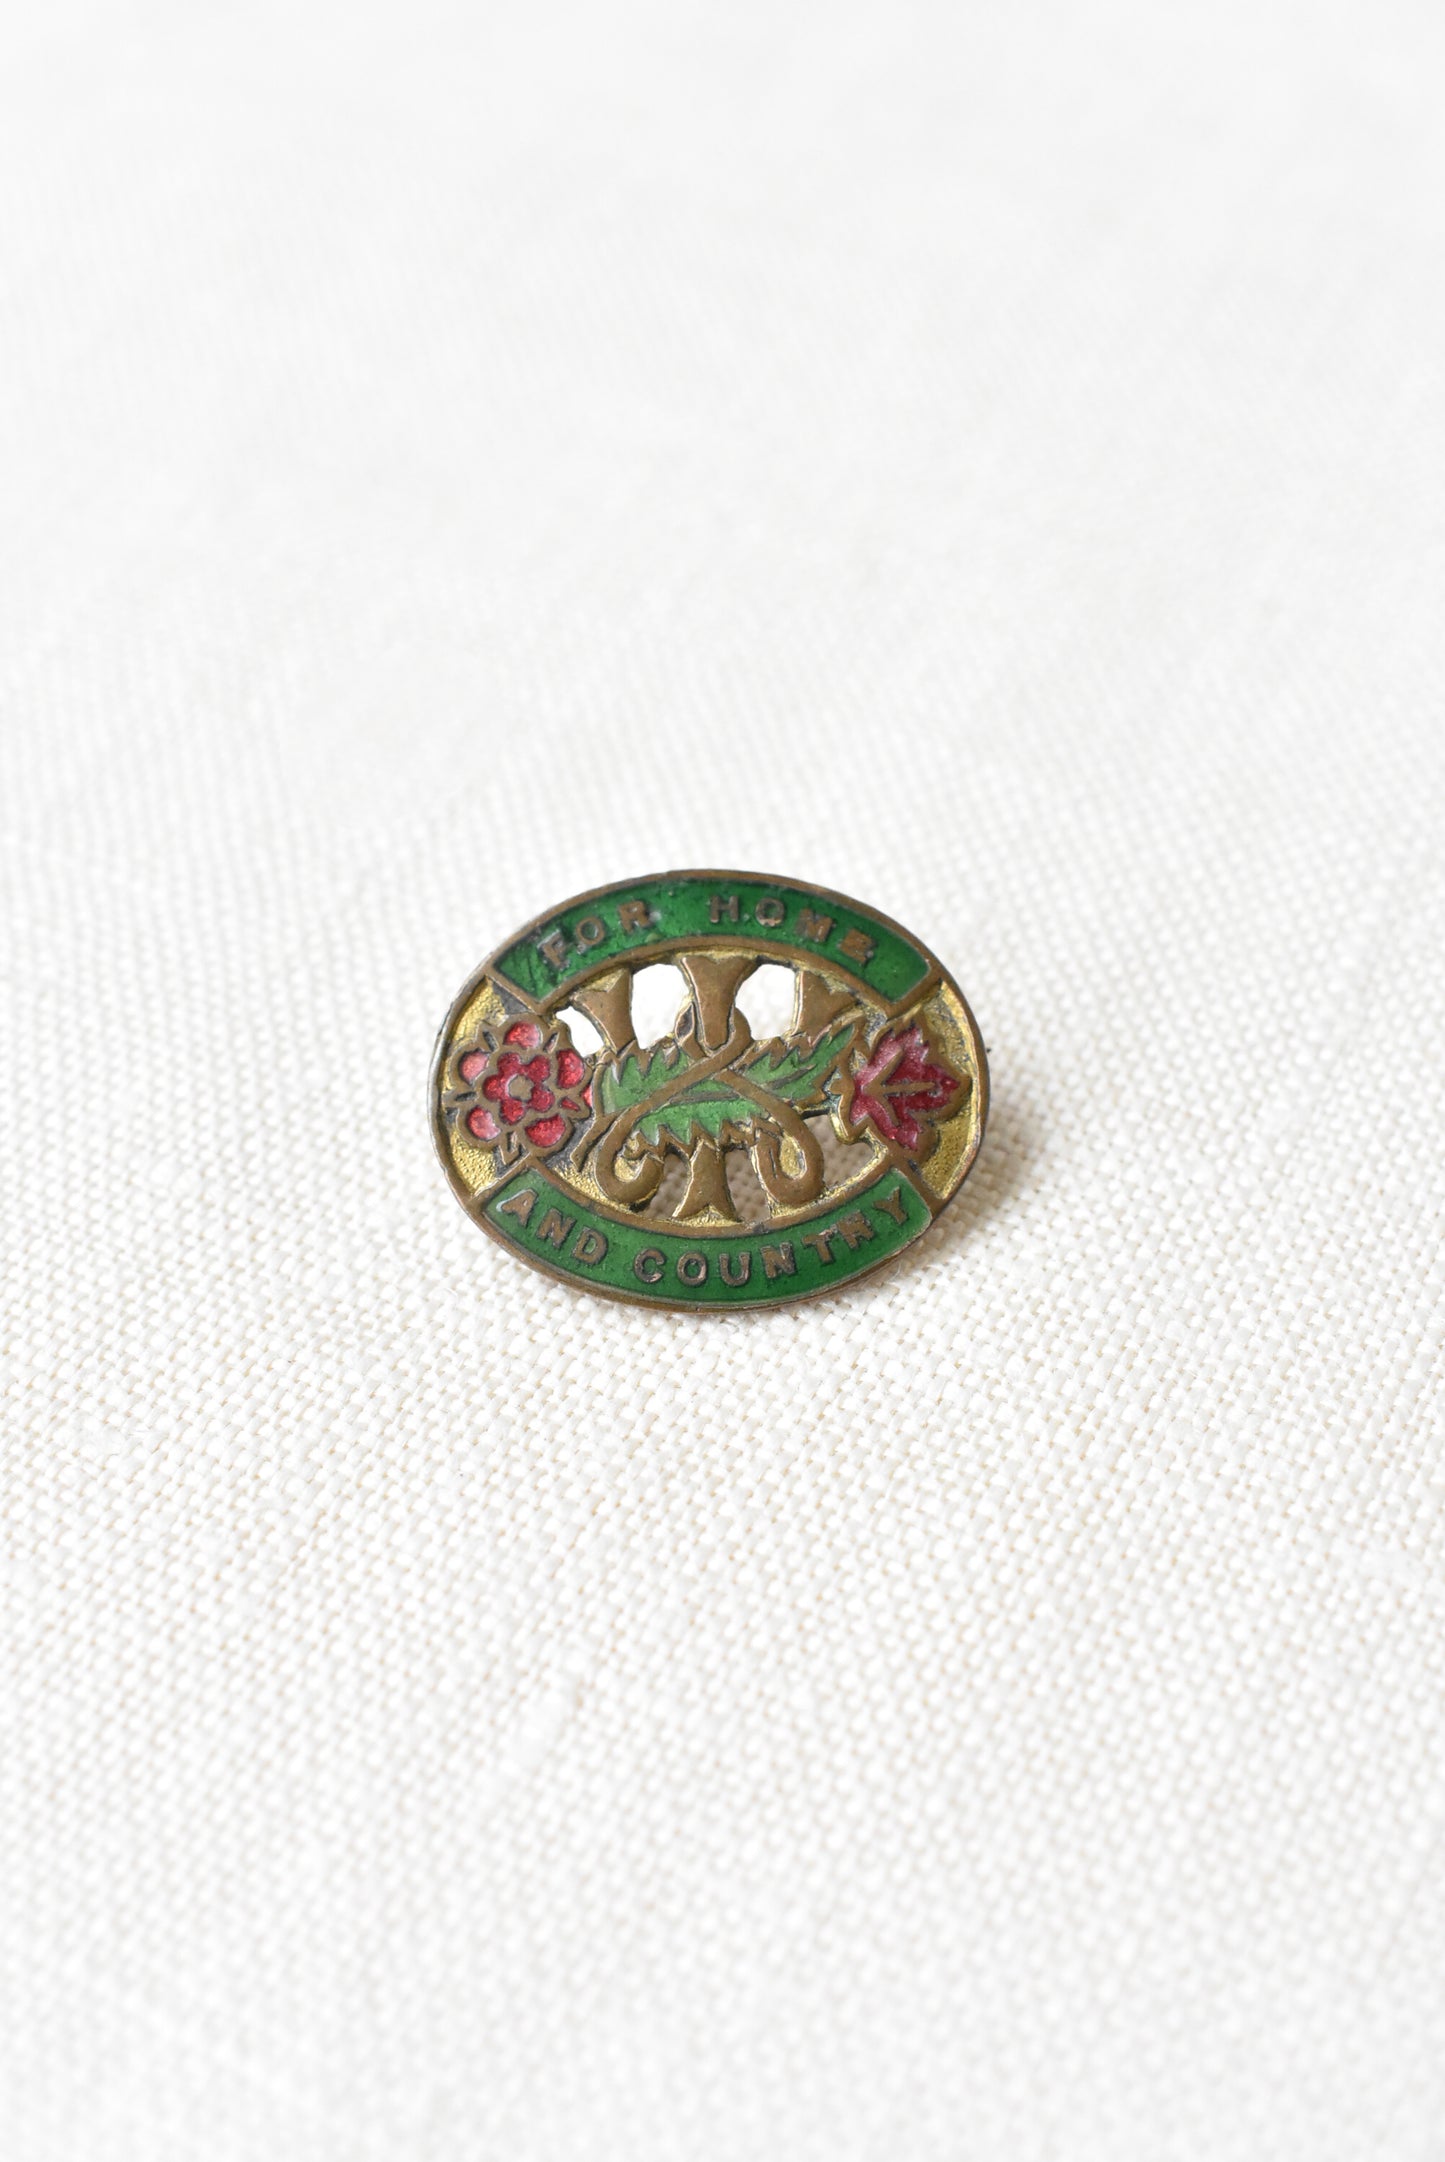 Vintage NZ Country Women’s Institute enamel badge brooch